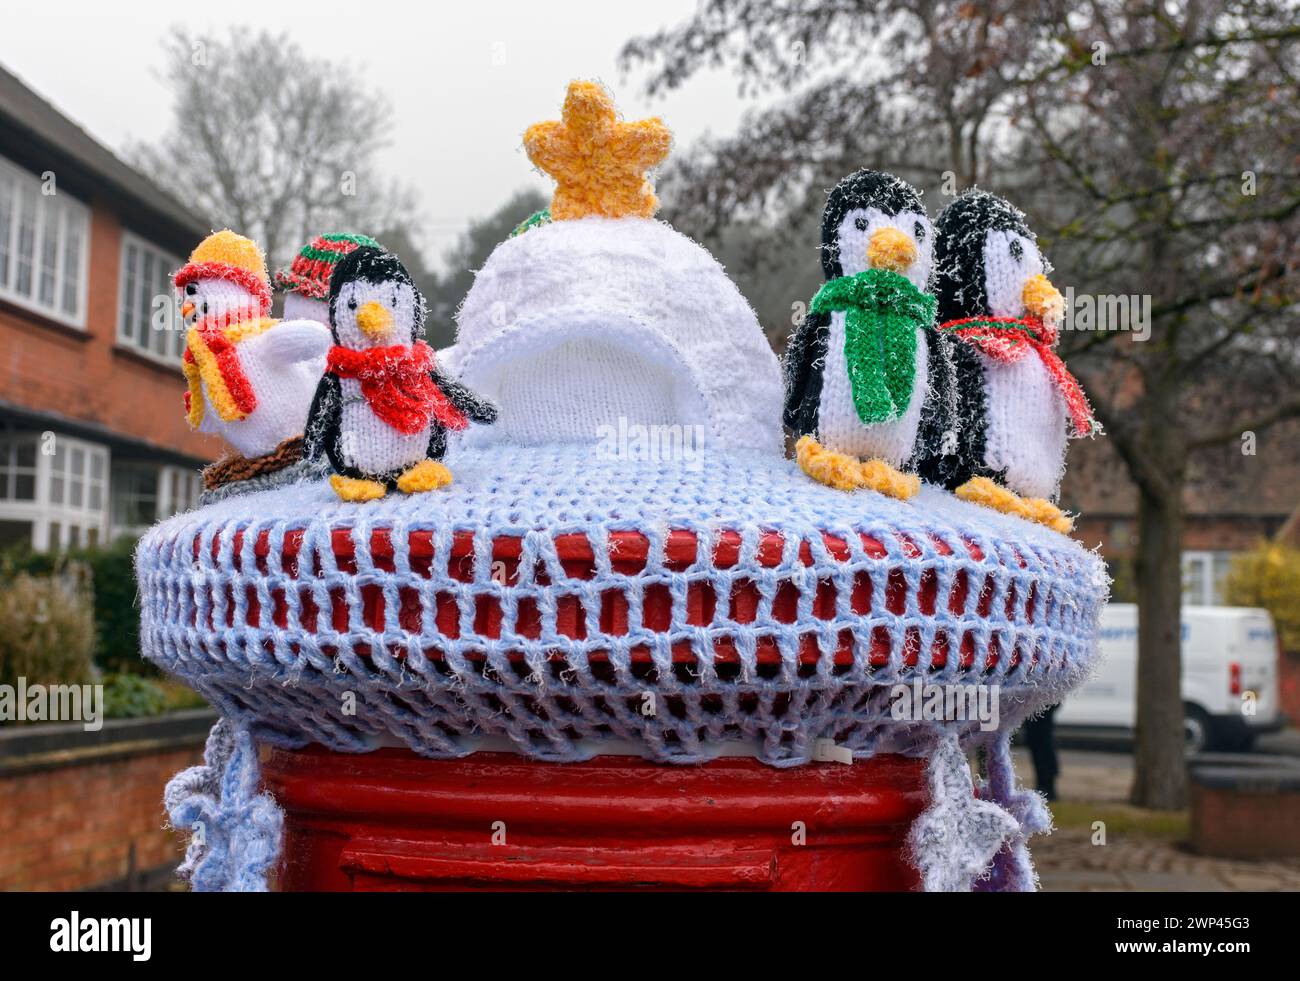 Parte superiore della scatola di posta a maglia o all'uncinetto raffigurante i personaggi dei pinguini, un igloo e una stella. Al Mercatino di Natale di Ruddington, Nottinghamshire, Regno Unito Foto Stock